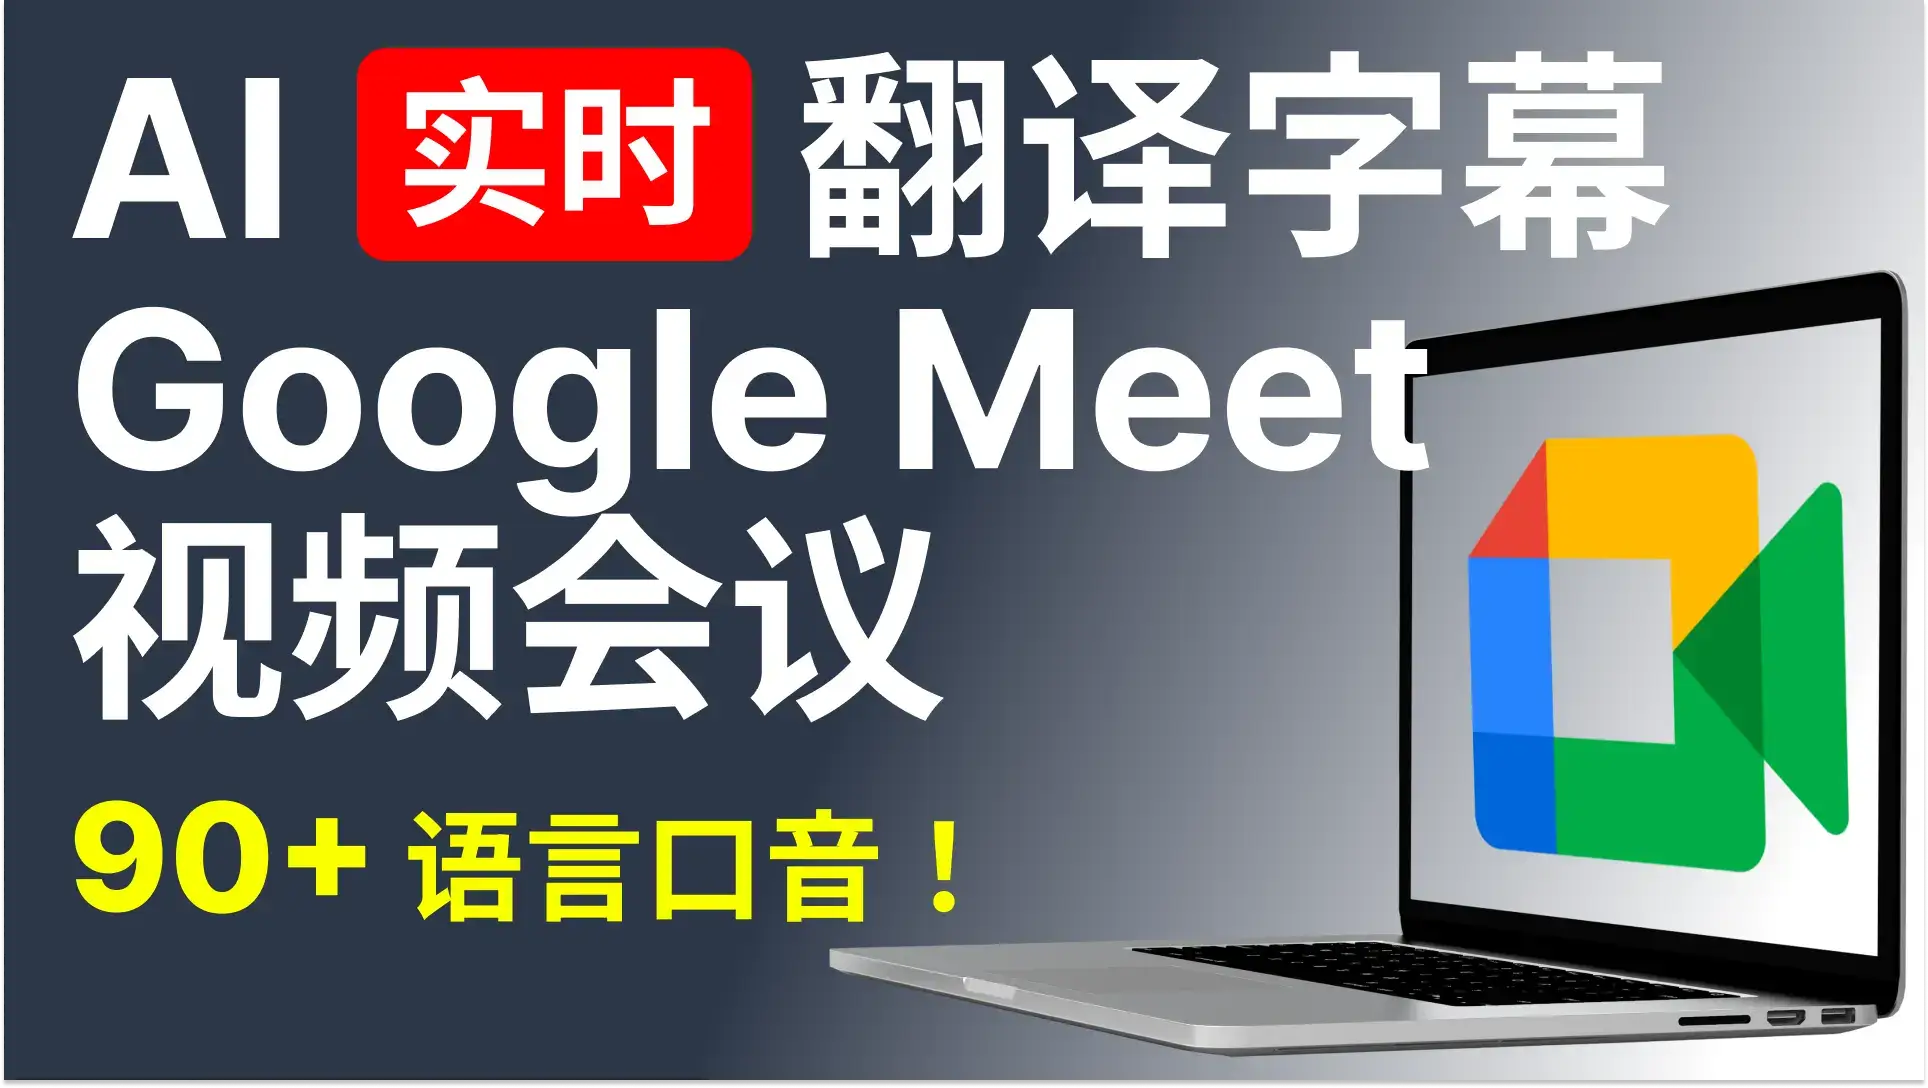 充分理解任何语言的 Google Meet 视频会议，Google Meet 网课及更多场景。90+语言，95%高准确率，安全加密。